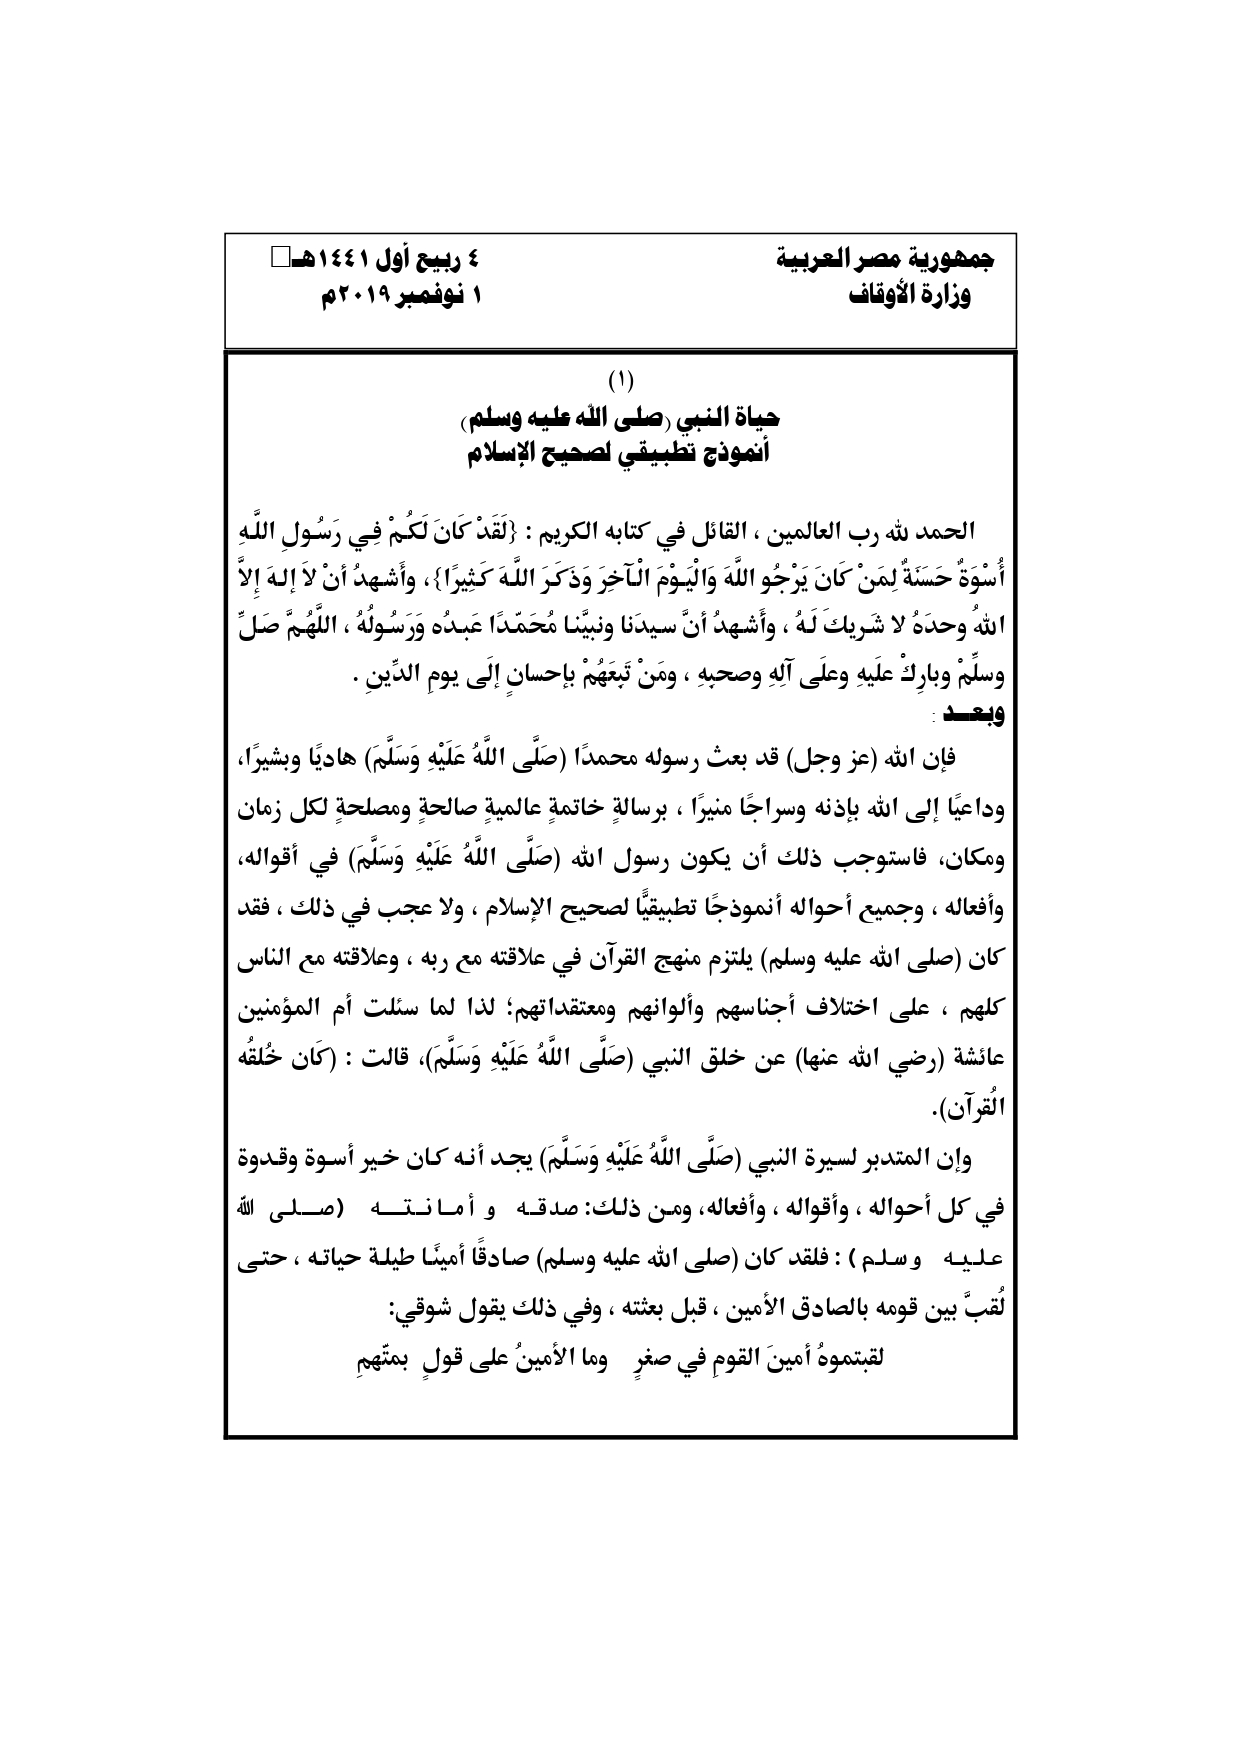 حياة النبي أنموذج تطبيقي لصحيح الإسلام خطبة وزارة الأوقاف المصرية 1 نوفمبر pdf